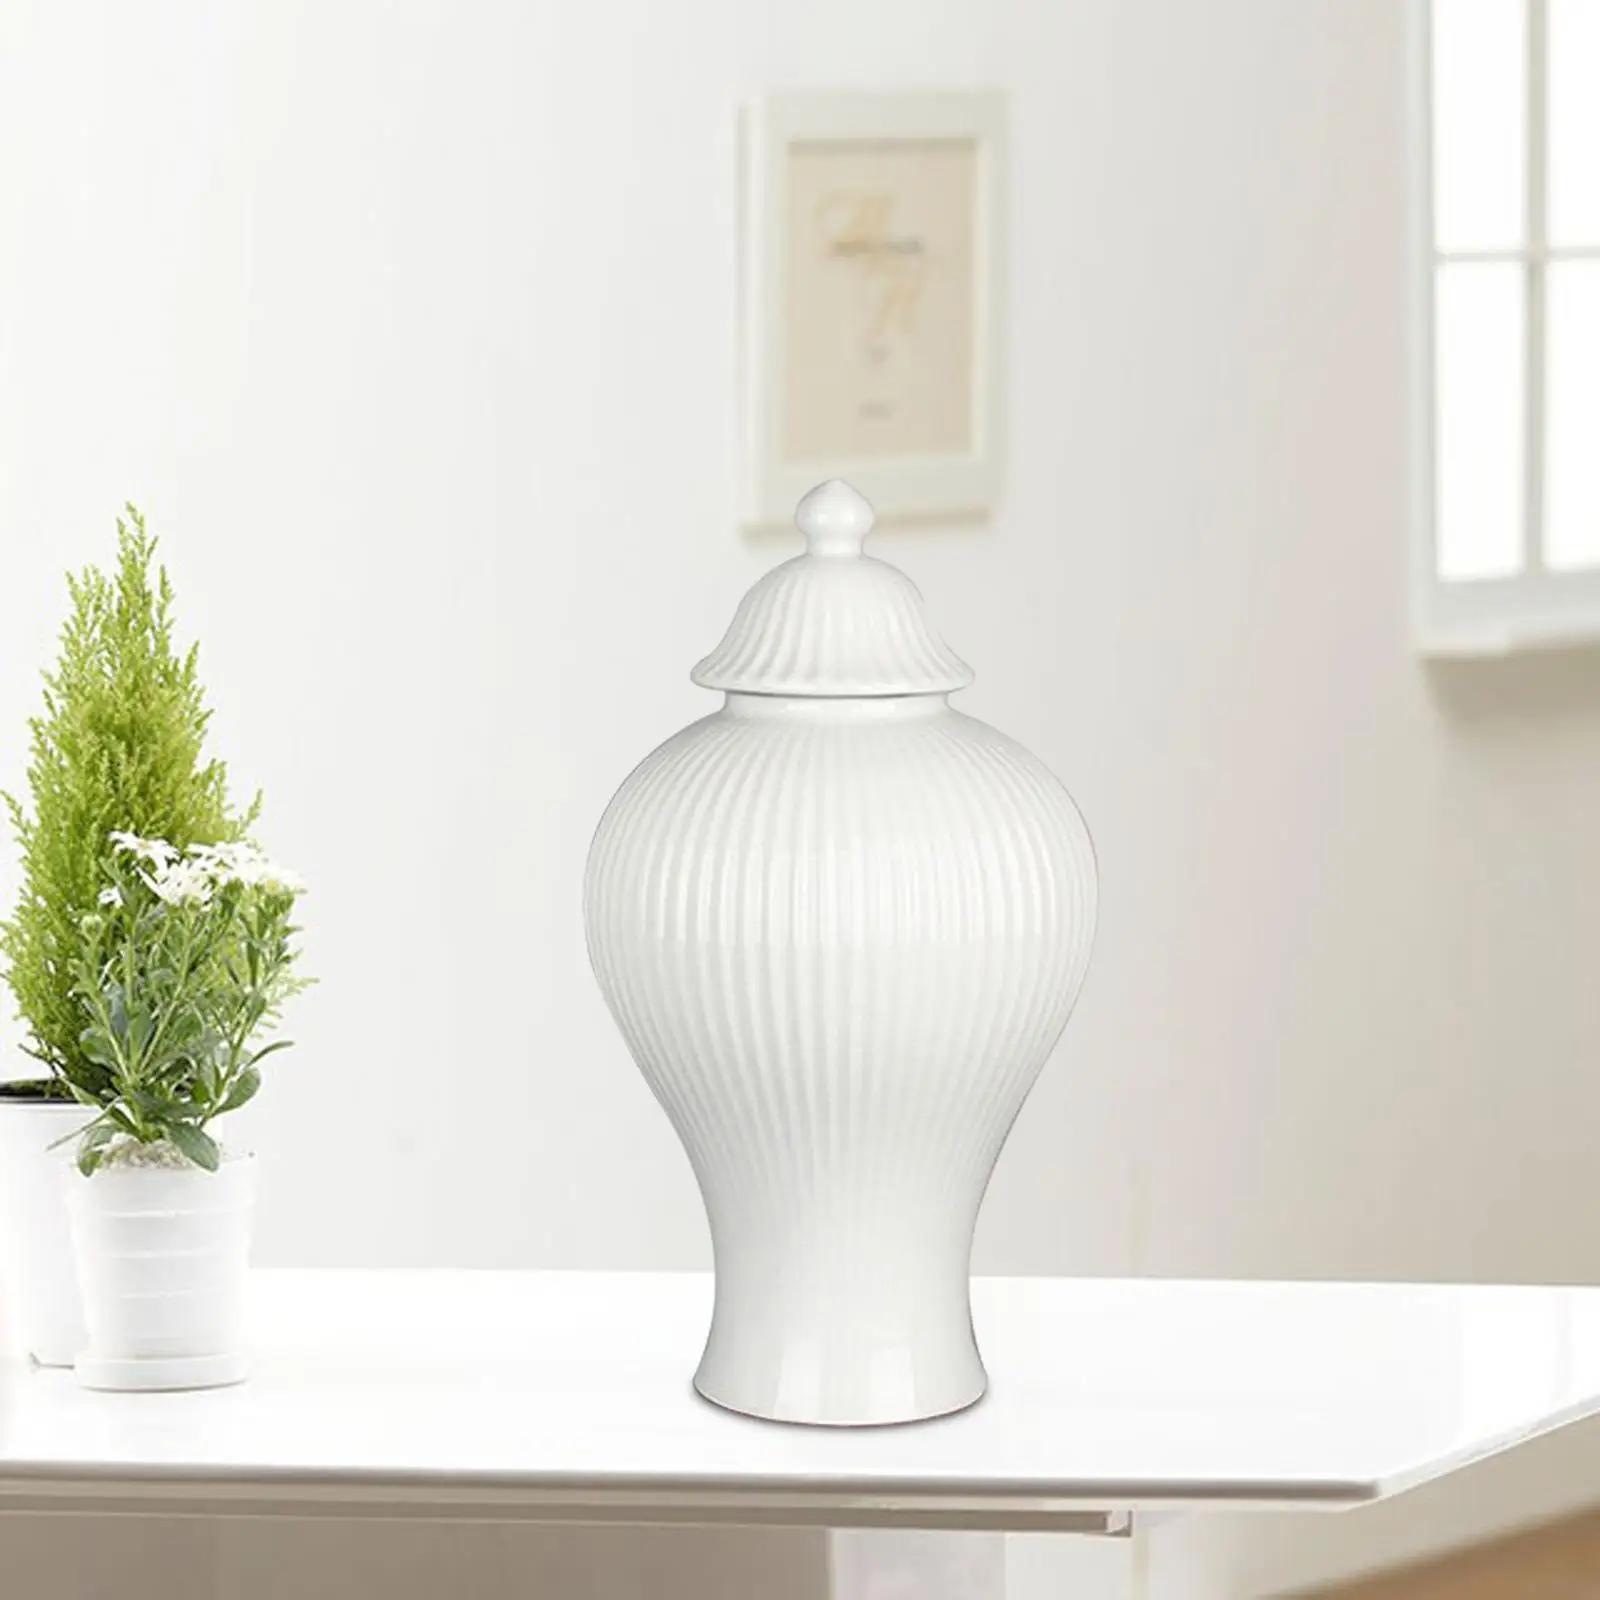 Ceramic Ginger Jar Decorative Jars with Lid Flower Vase Table Centerpiece for